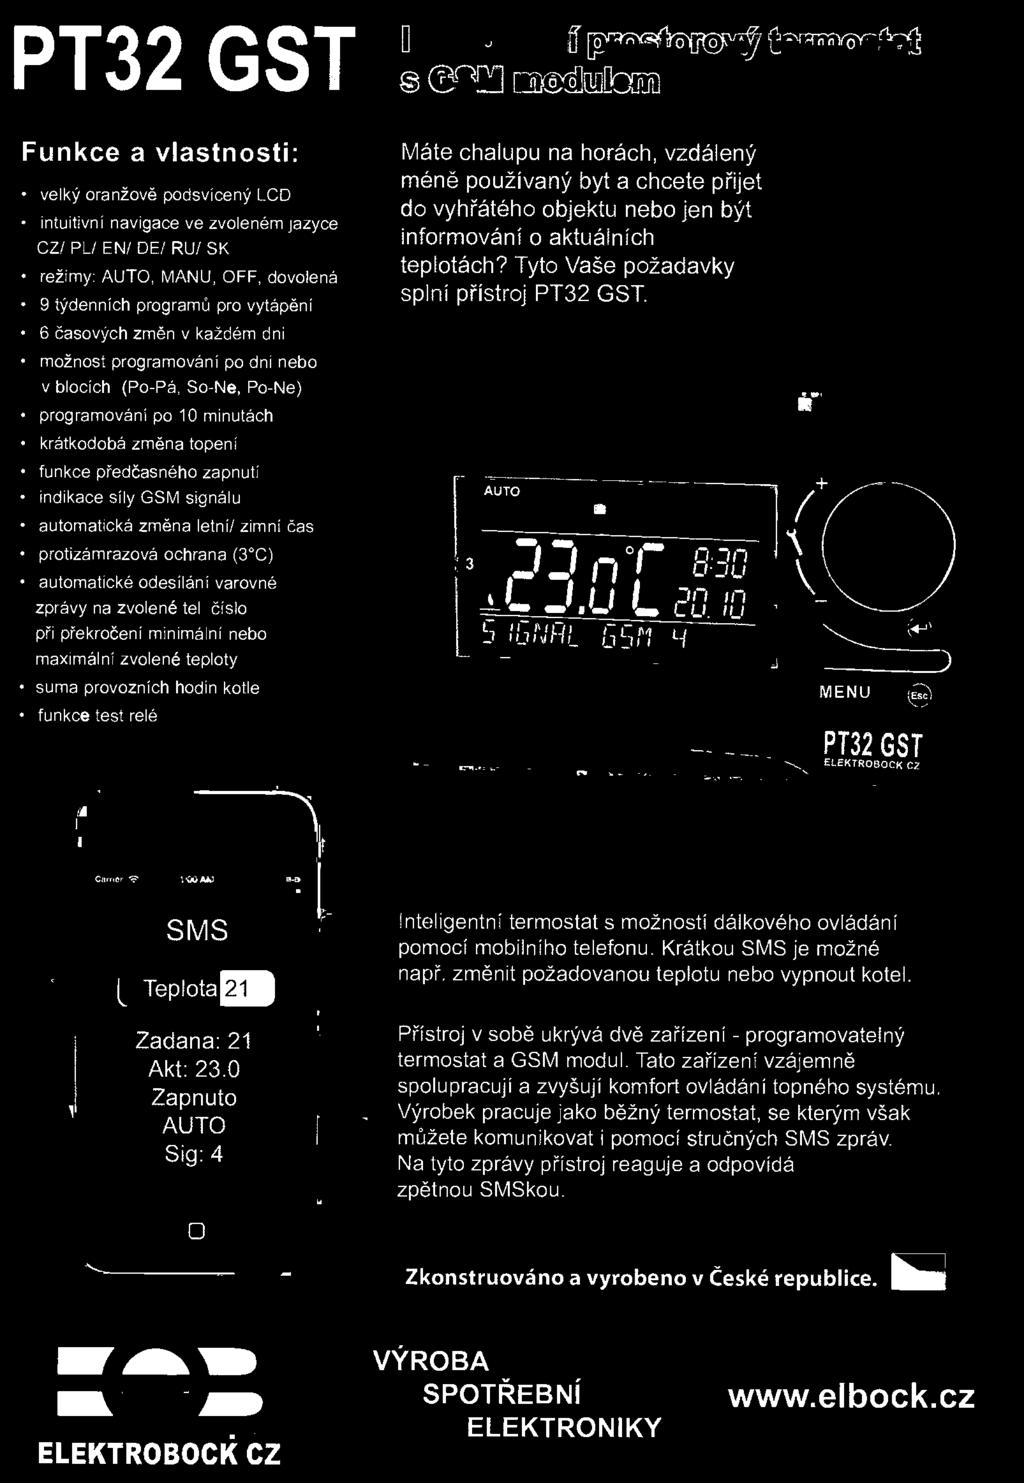 číslo při překročení minimální nebo maximální zvolené teploty suma provozních hodin kotle funkce test relé PT32 GST ELEKTROBOCK CZ f - Cirener la)mbl Inteligentní termostat s možností dálkového